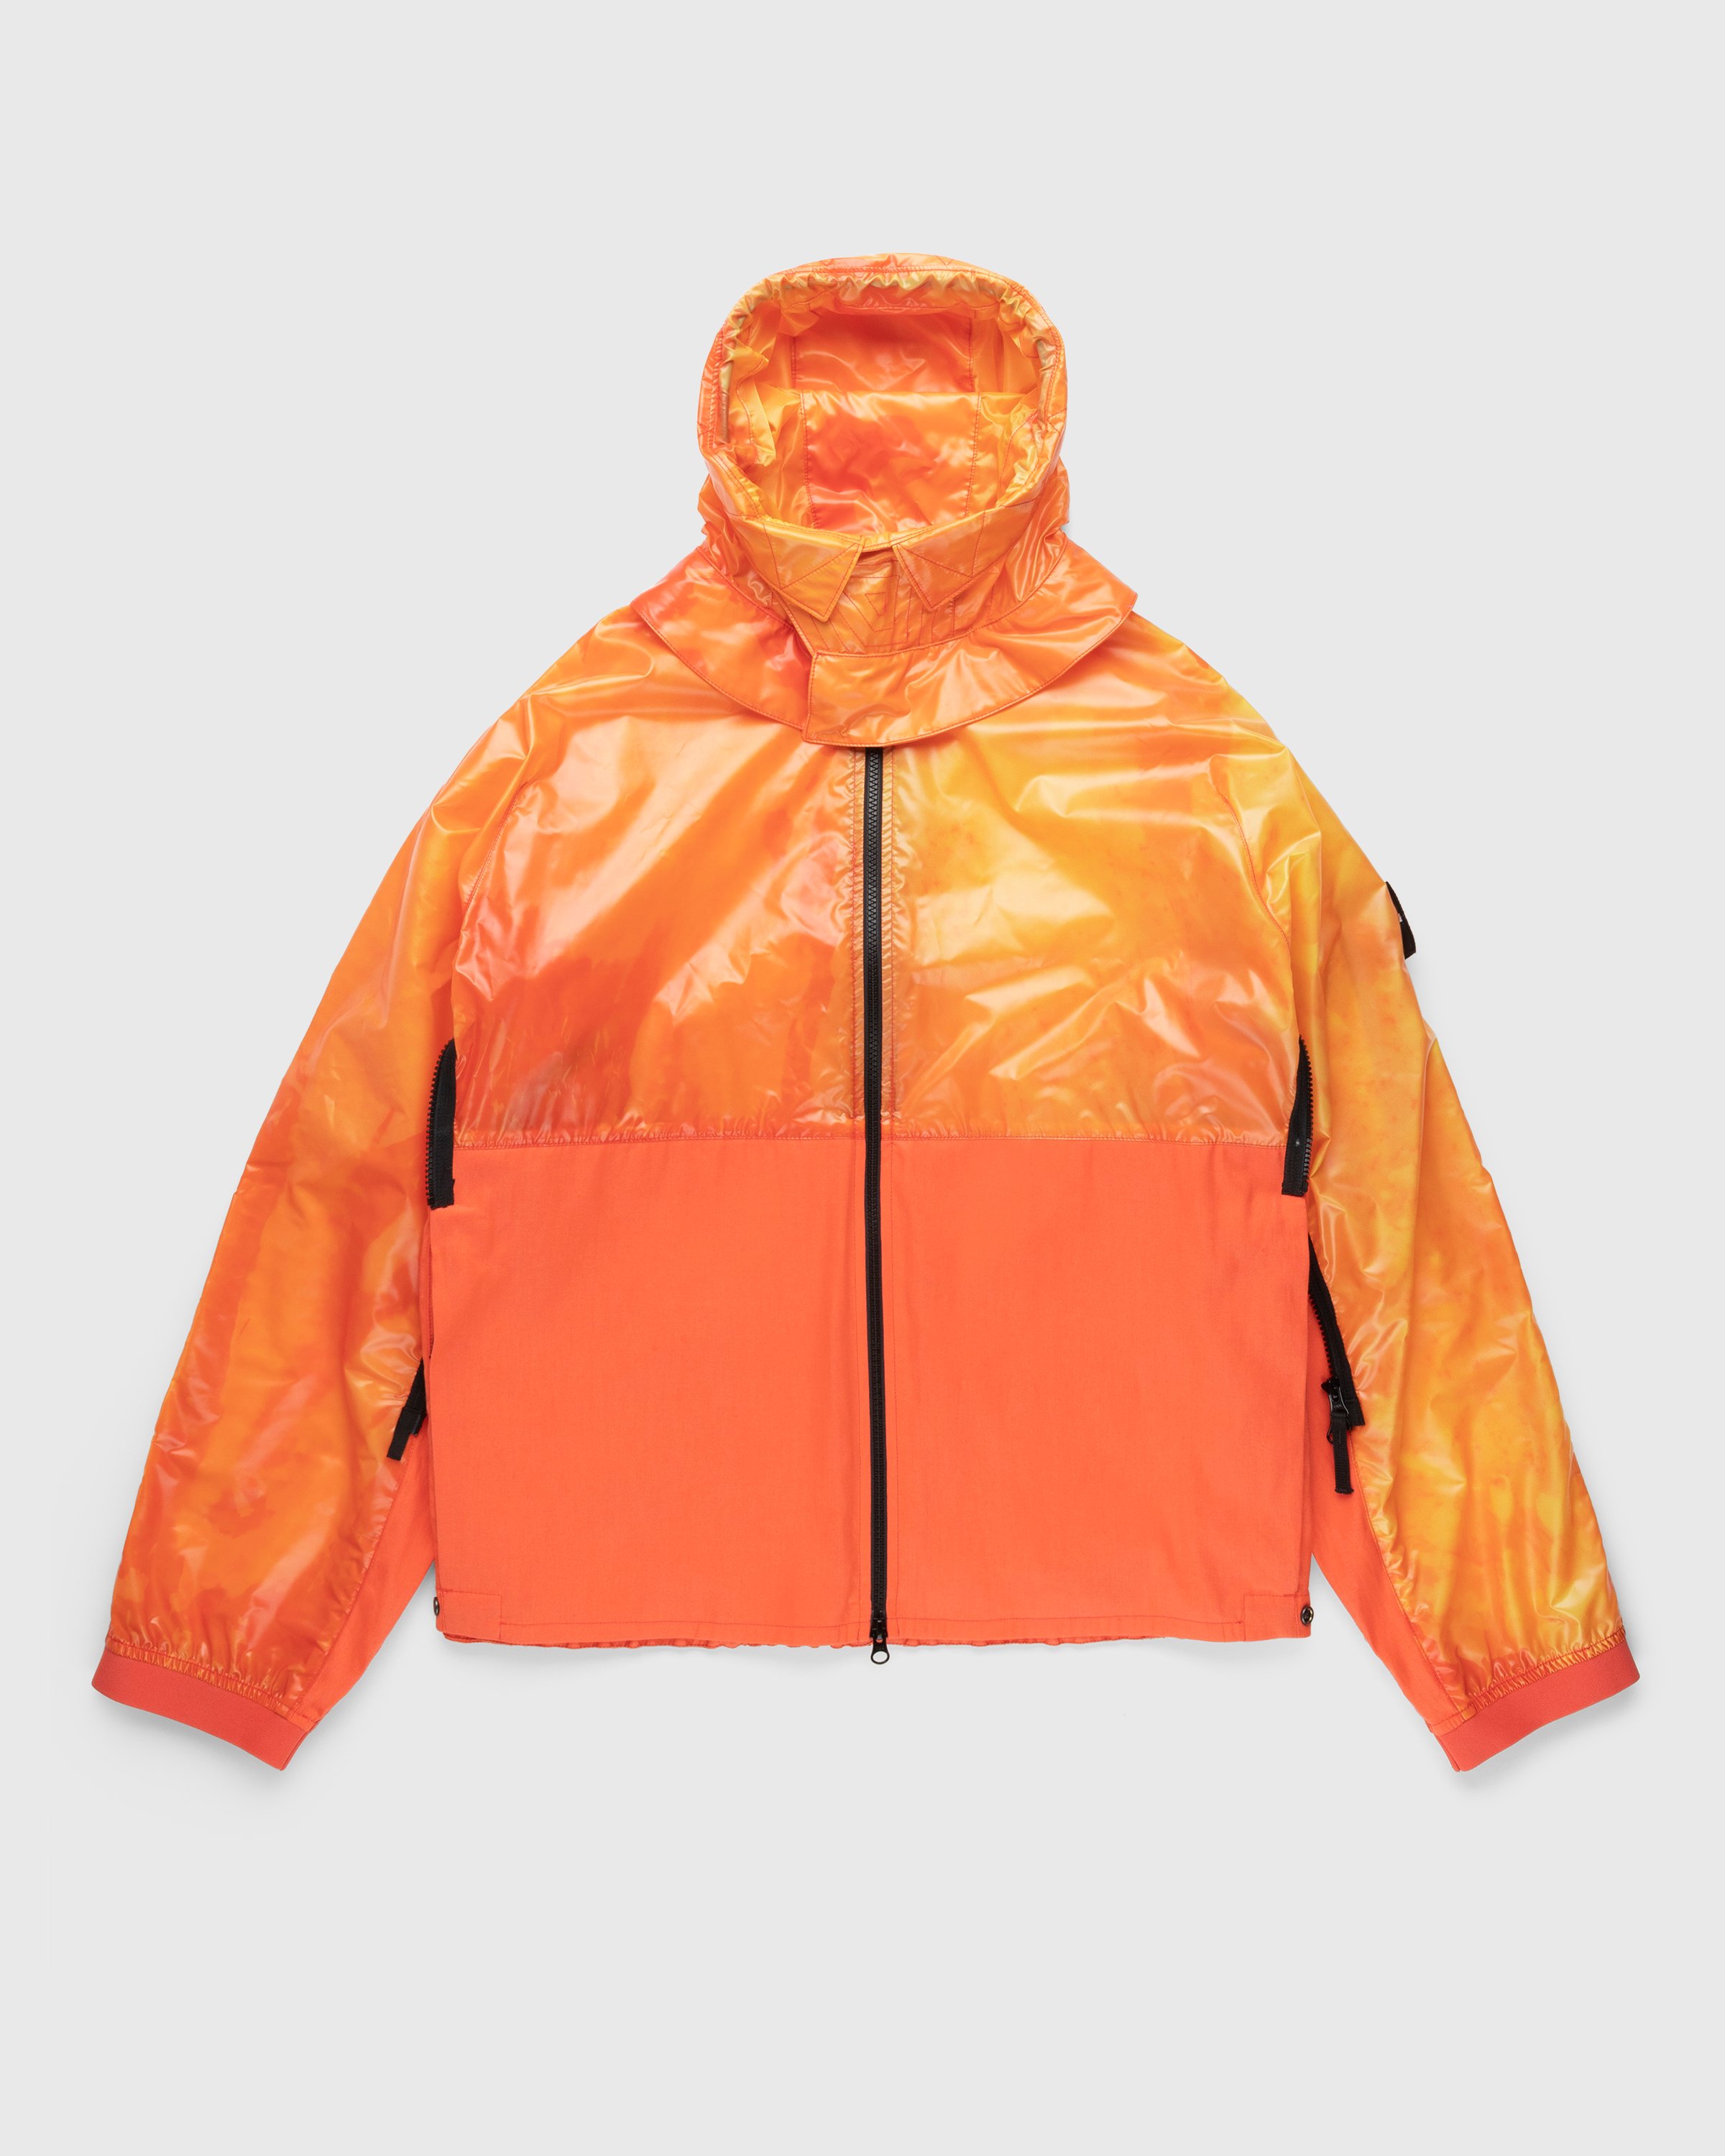 Stone Island - 41599 Heat Reactive Nylon Jacket Orange - Clothing - Orange - Image 1